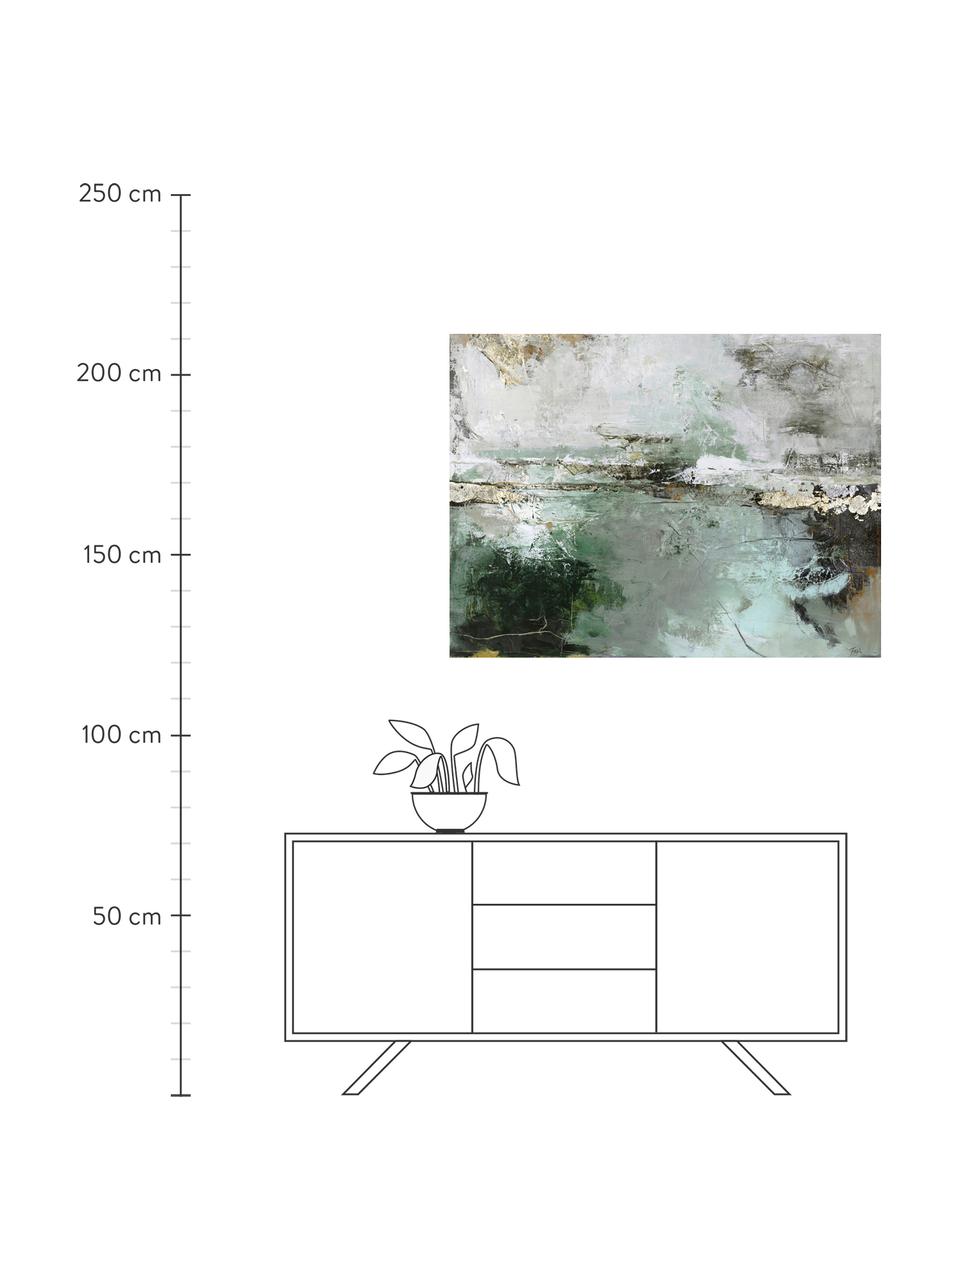 Bemalter Leinwanddruck Hillside, Bild: Digitaldruck mit Ölfarben, Goldfarben, Grün, Weiß, Mehrfarbig, B 120 x H 90 cm